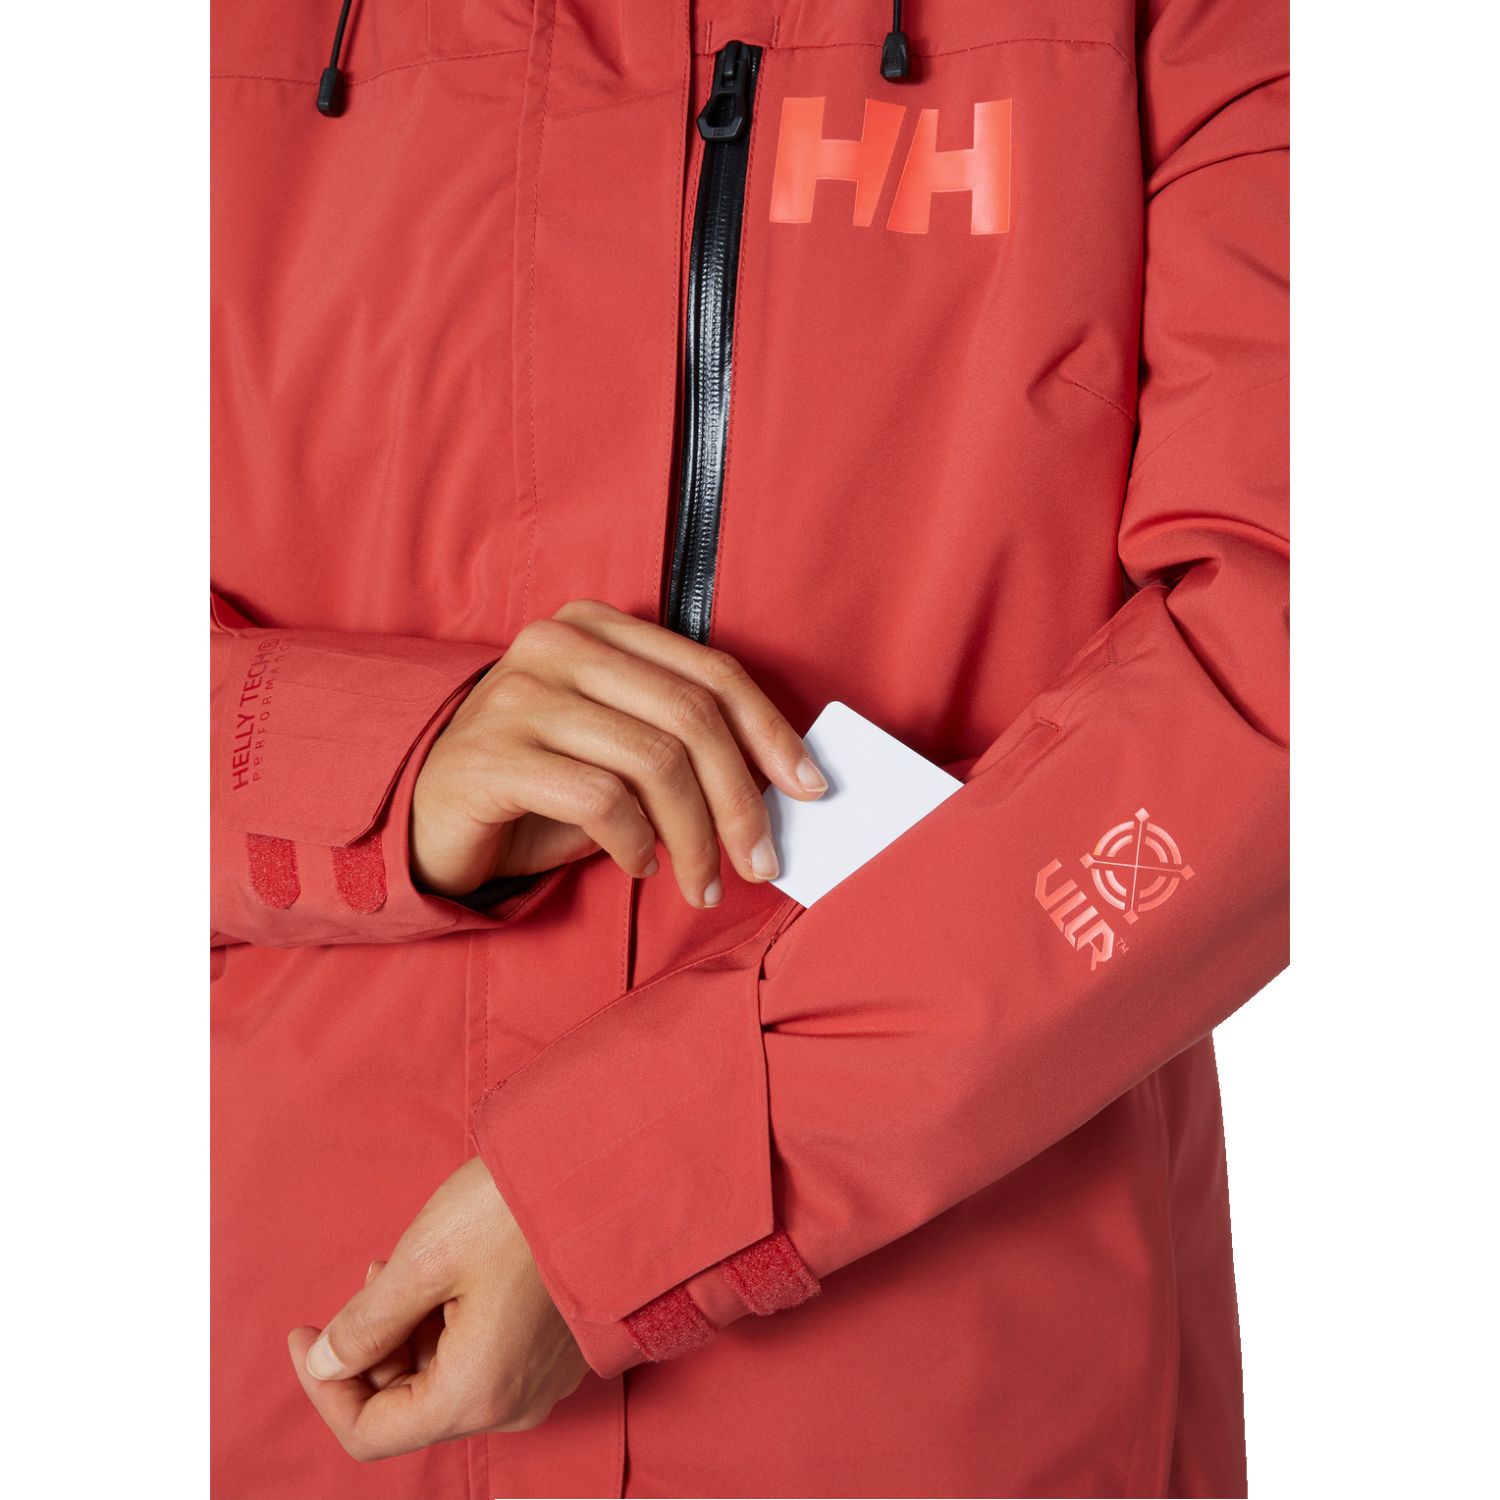 Helly Hansen Powshot, ski jacket, women, poppy red